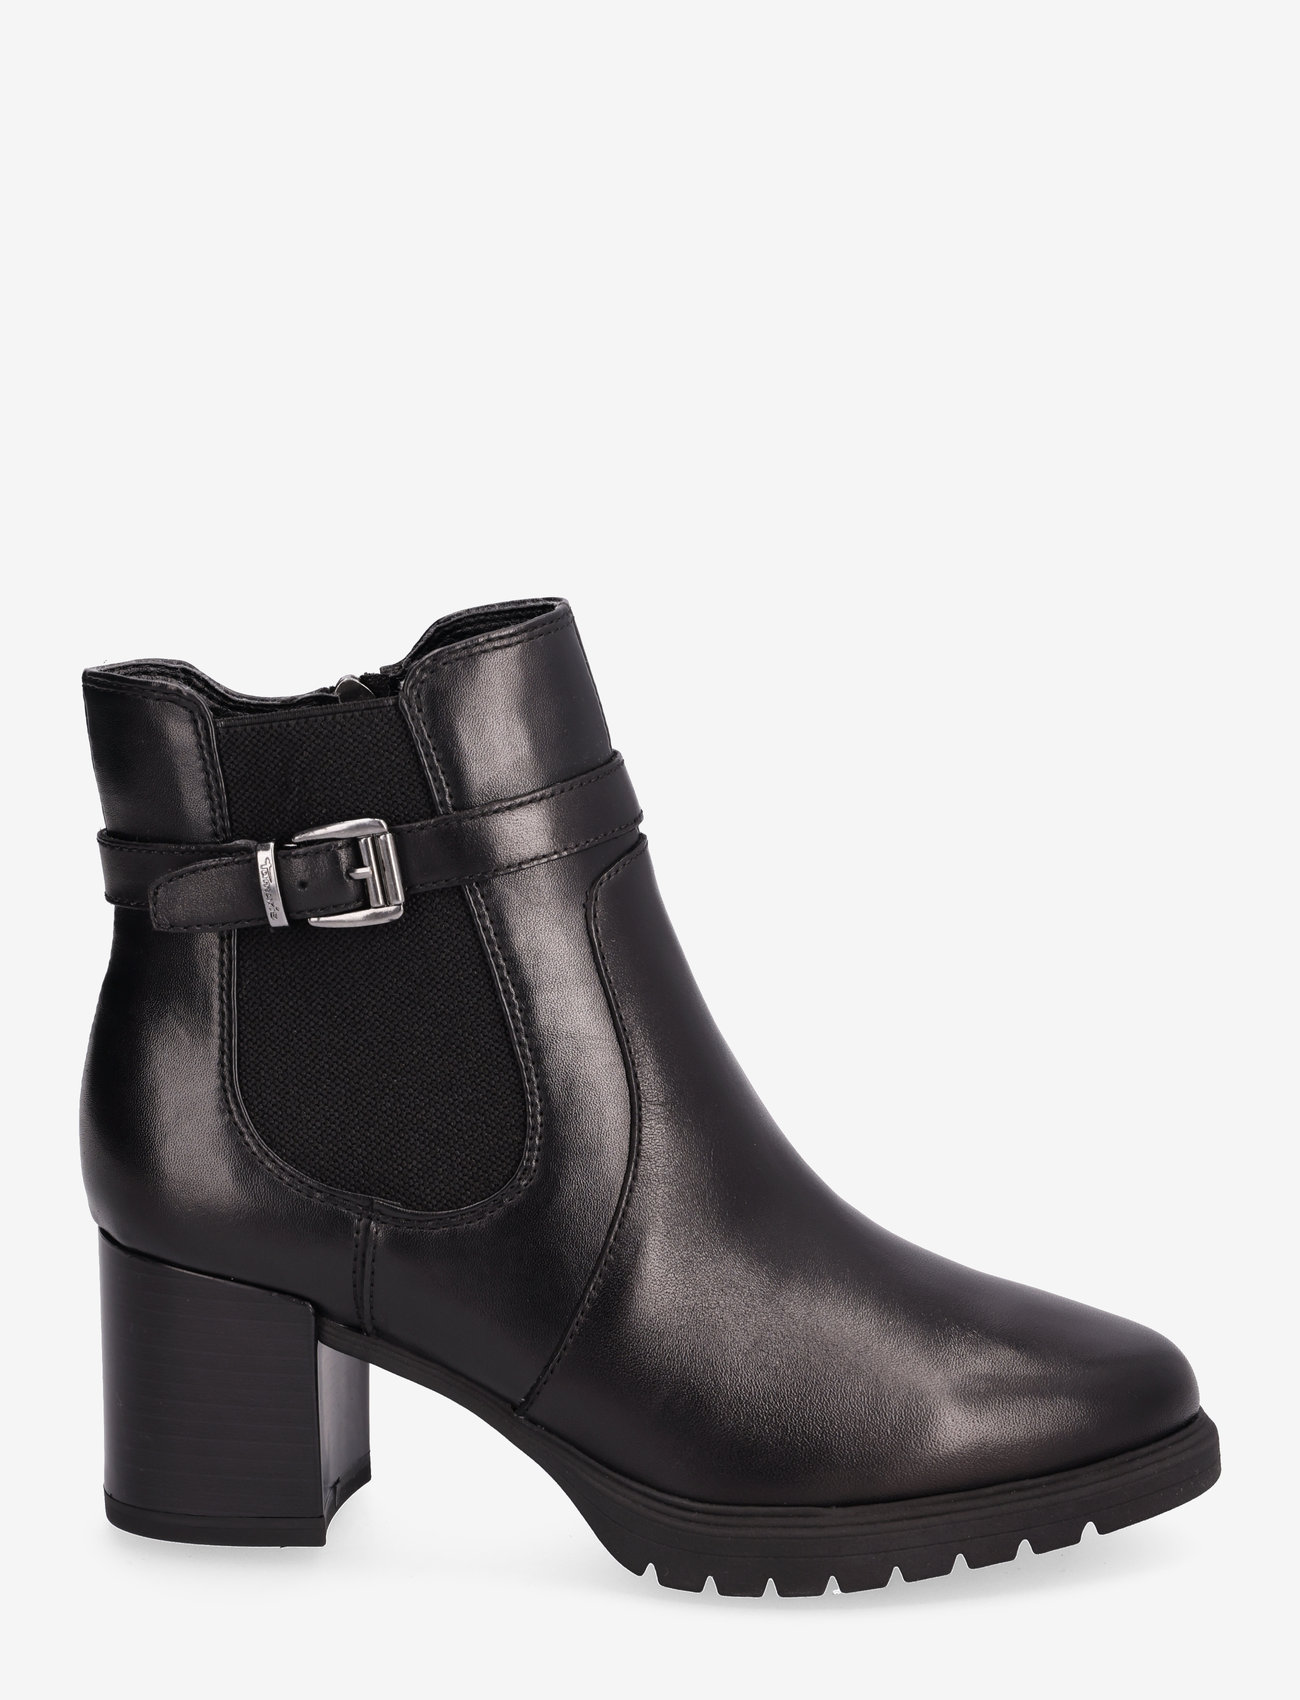 Tamaris - Women Boots - hohe absätze - black - 1